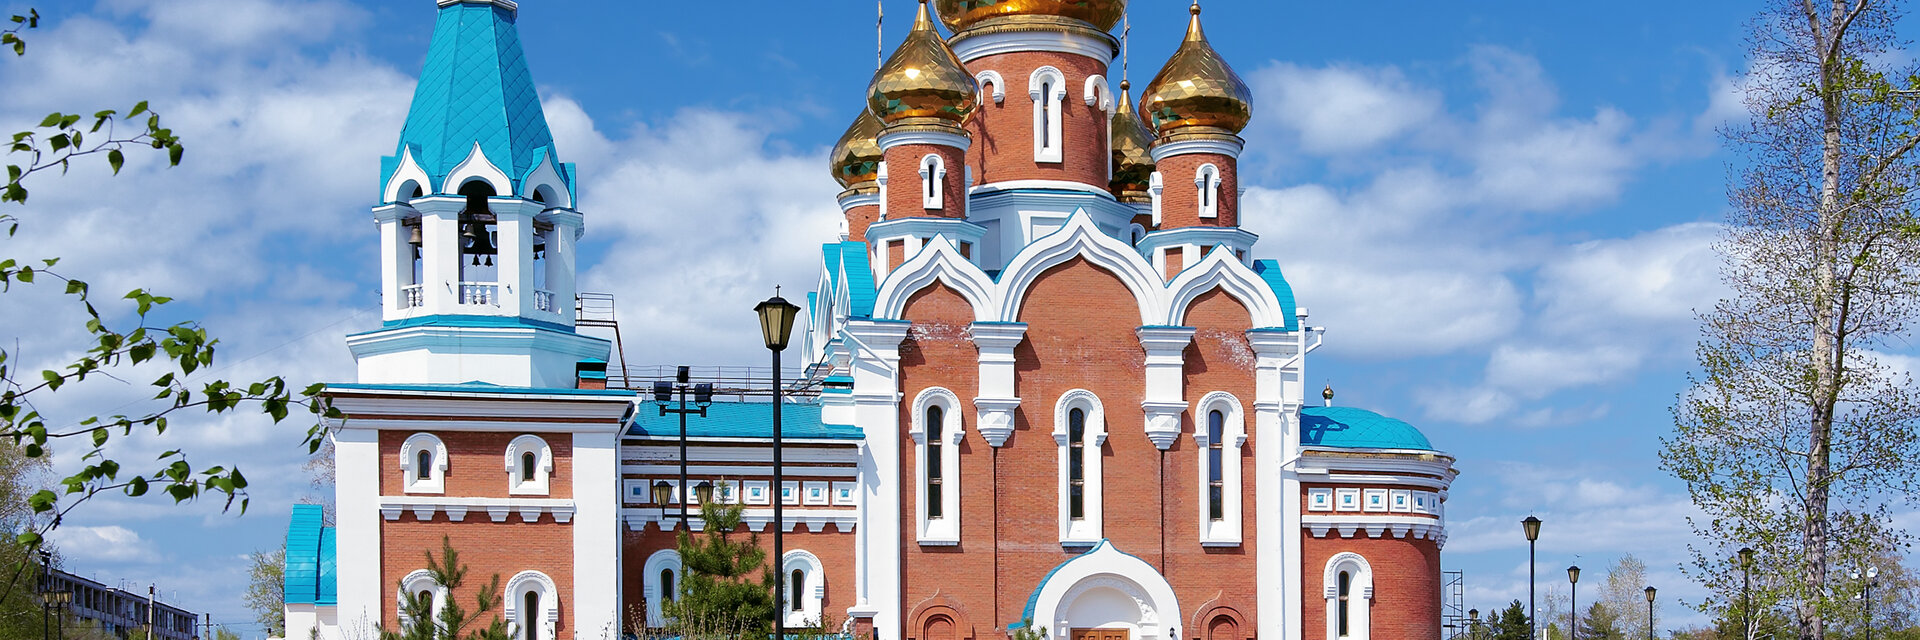 Комсомольск-на-Амуре: отели и гостиницы в центре